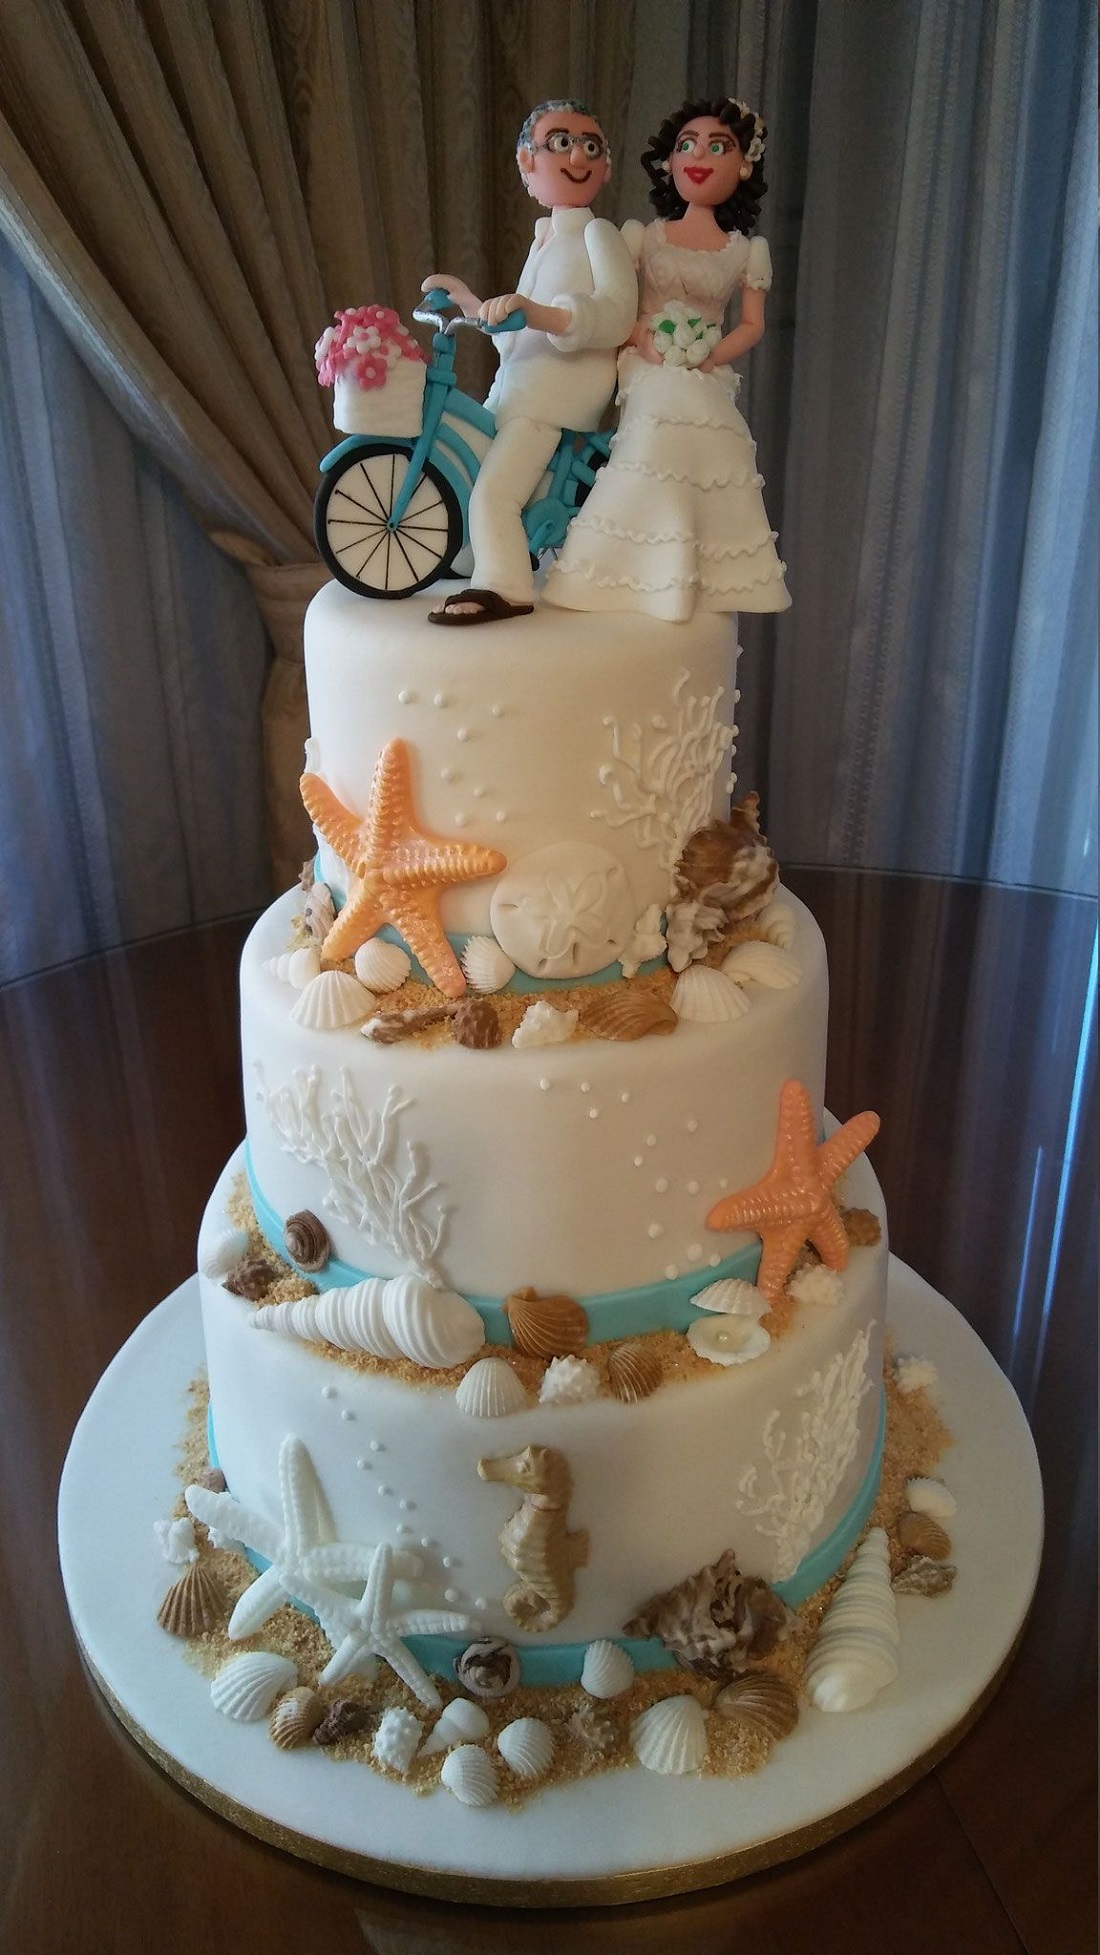 décoration de gâteau 3 étages étoiles de mer coquillages mariage